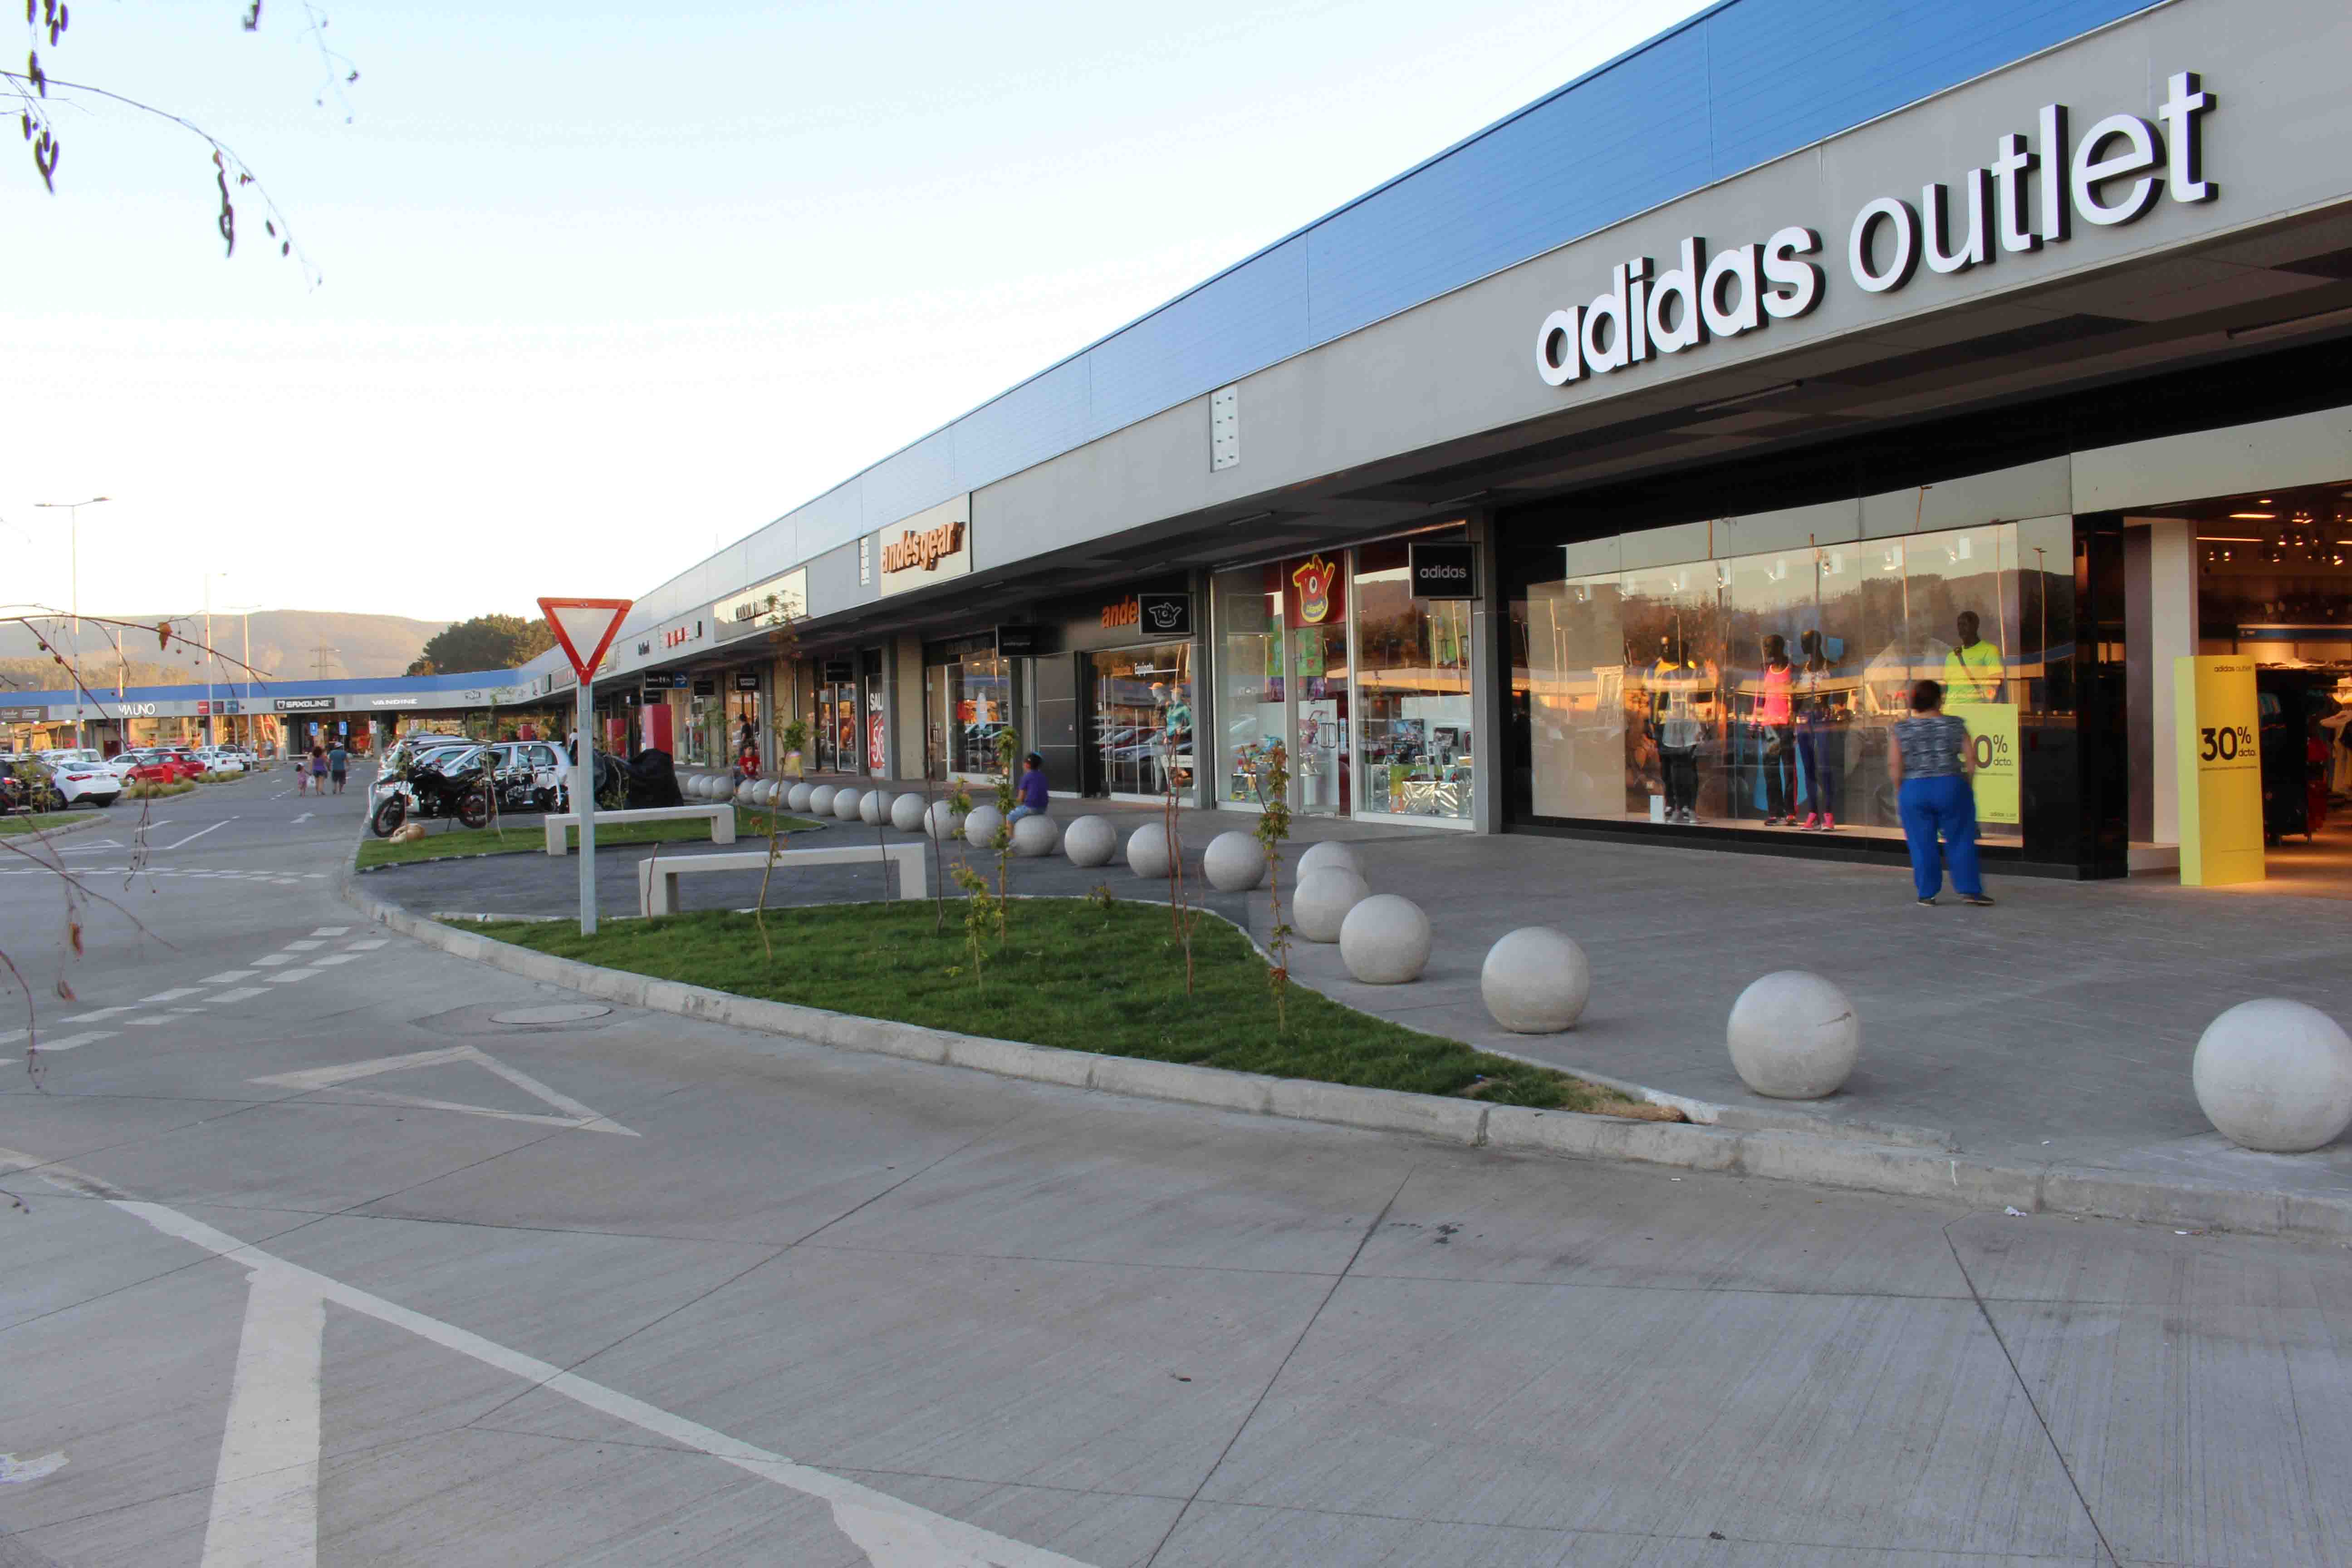 Outlet abre 10 nuevas tiendas y celebra las cien mil visitas al mes